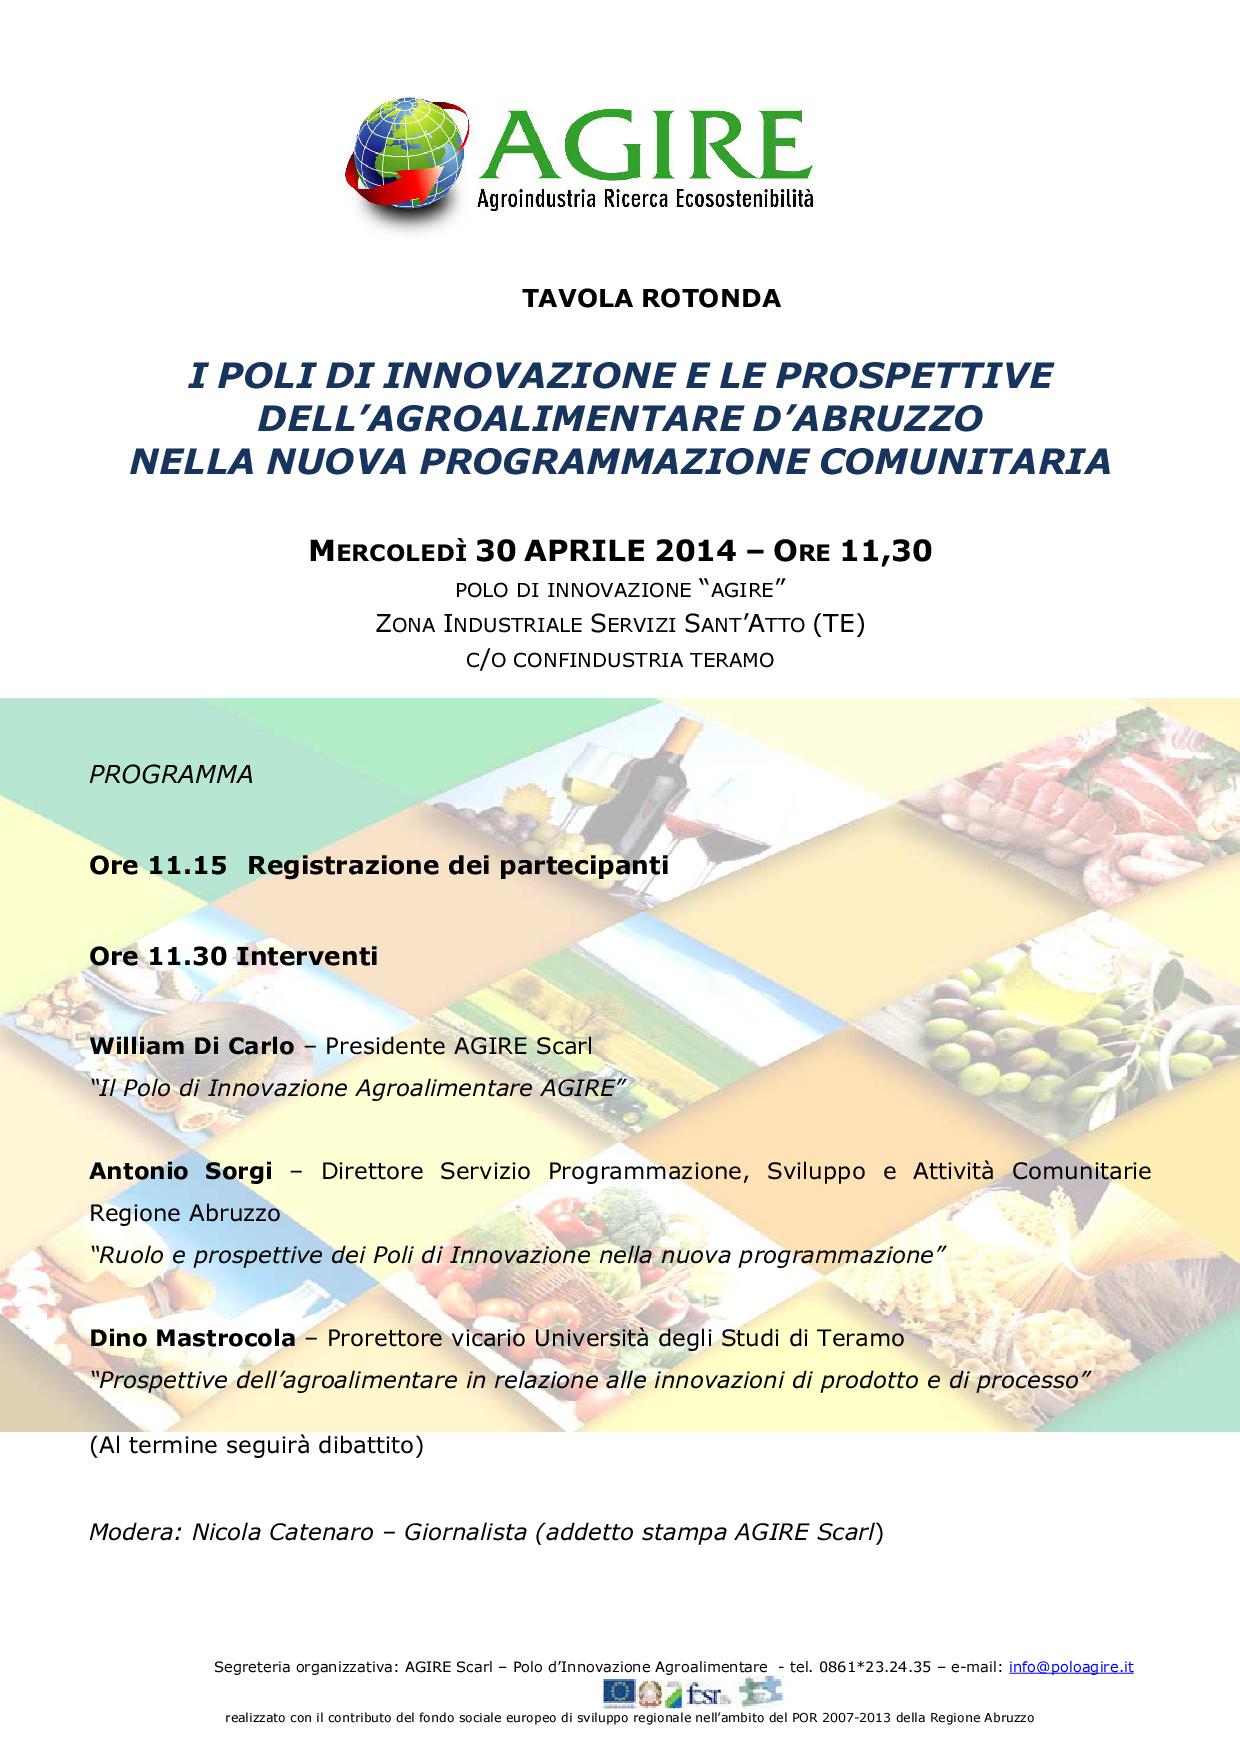 Tavola Rotonda - 30.04.2014 ore 11:30 - I poli di innovazione e le prospettive dell’agroalimentare d’Abruzzo nella nuova programmazione comunitaria